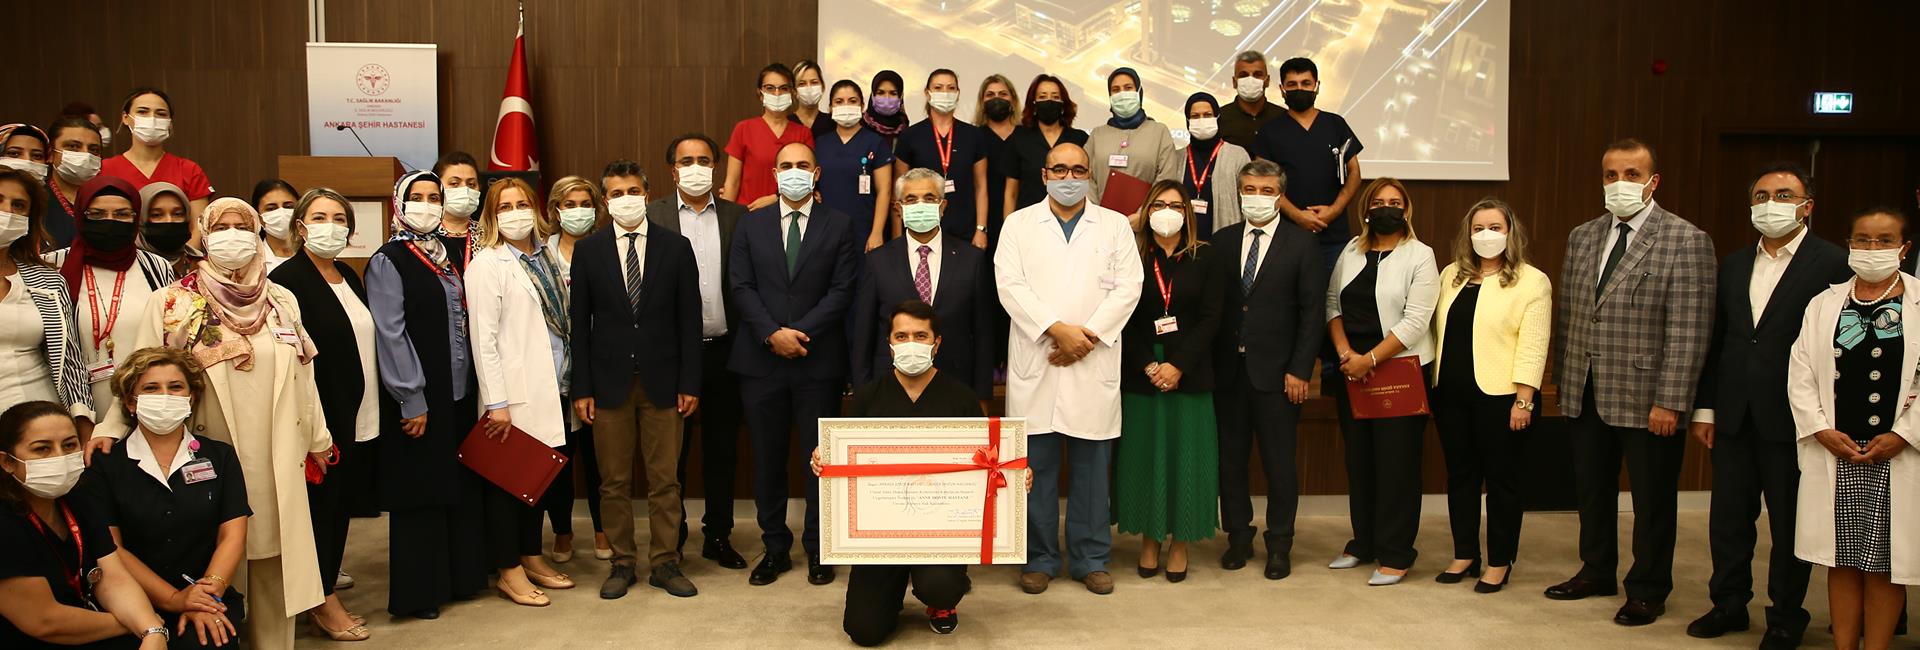 Городская больница Анкары получила звание „Больница, доброжелательная к матери“